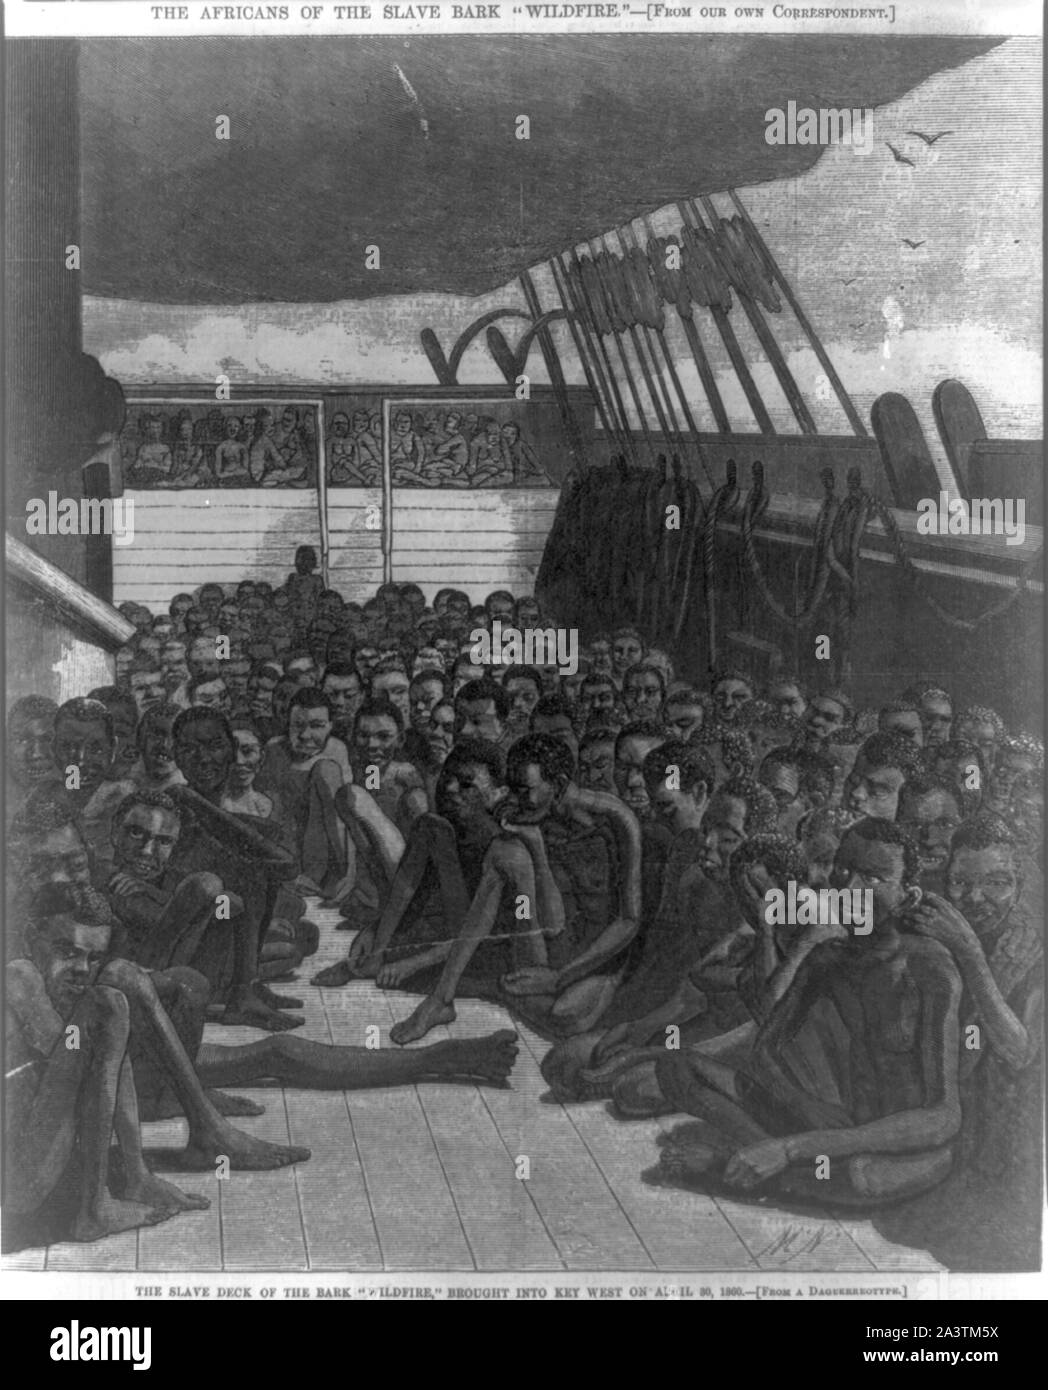 Gli africani della corteccia slave Wildfire--Il ponte slave della corteccia Wildfire, portato a Key West on April 30, 1860 Foto Stock